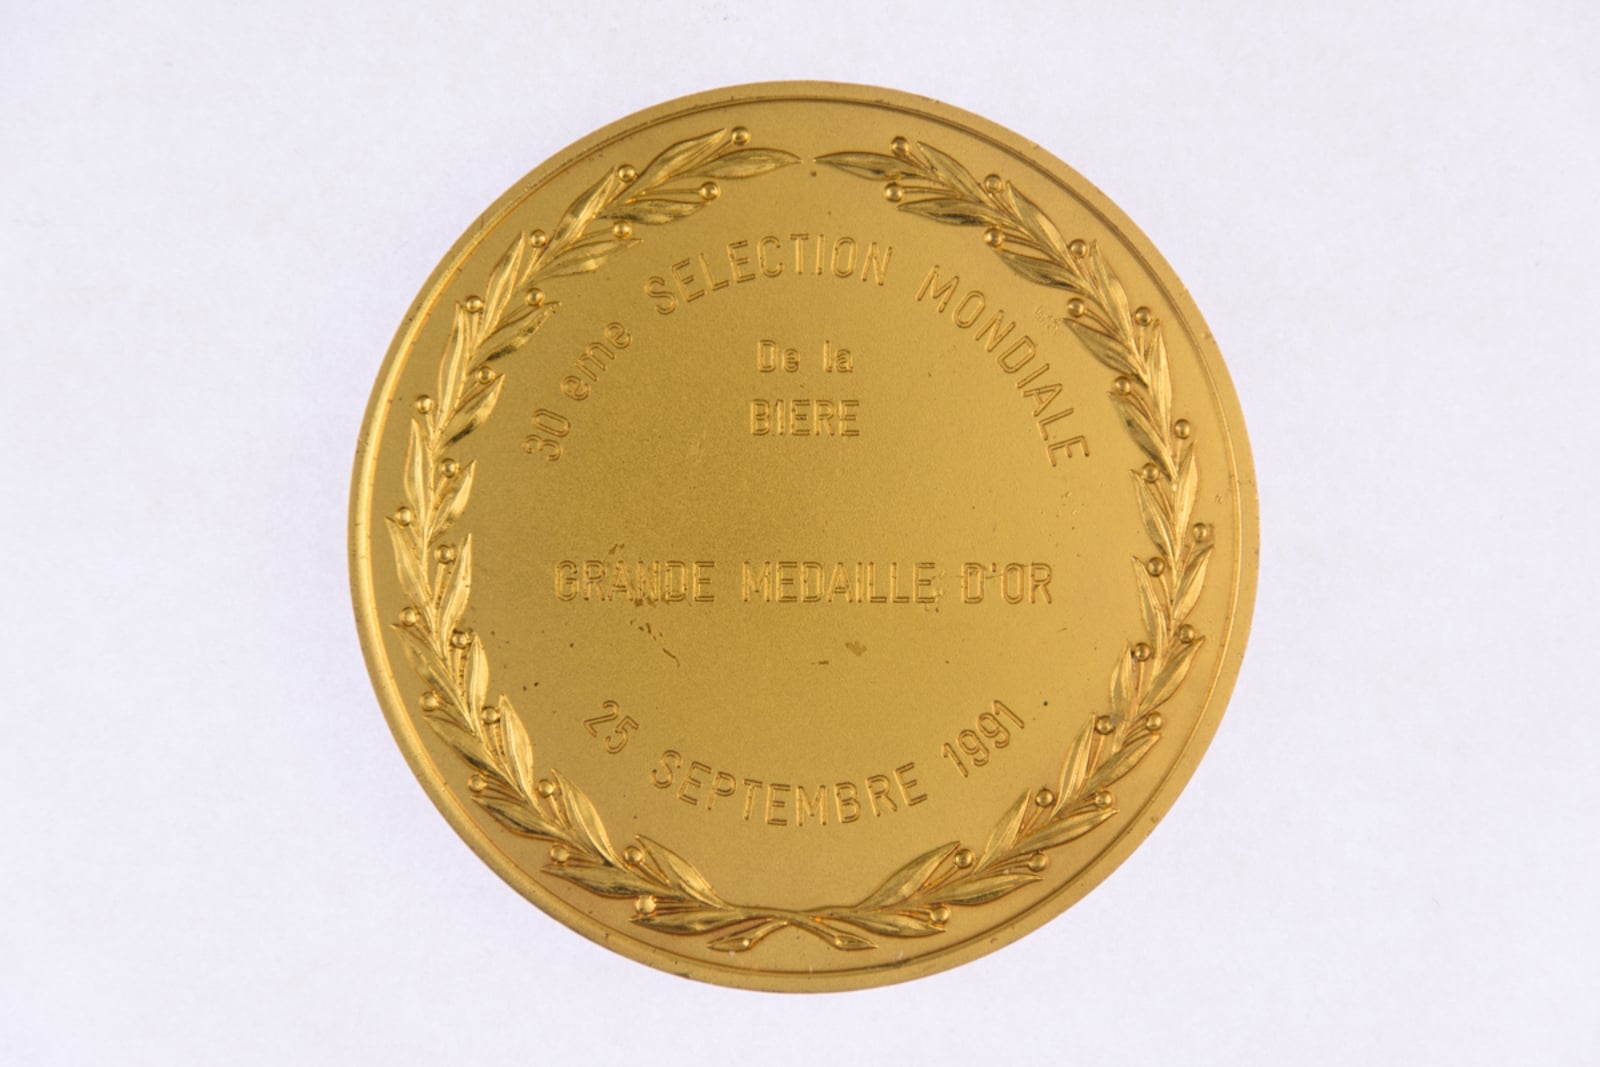 Monde Selection Bruxelles, Grande Medaille d'Or 1991